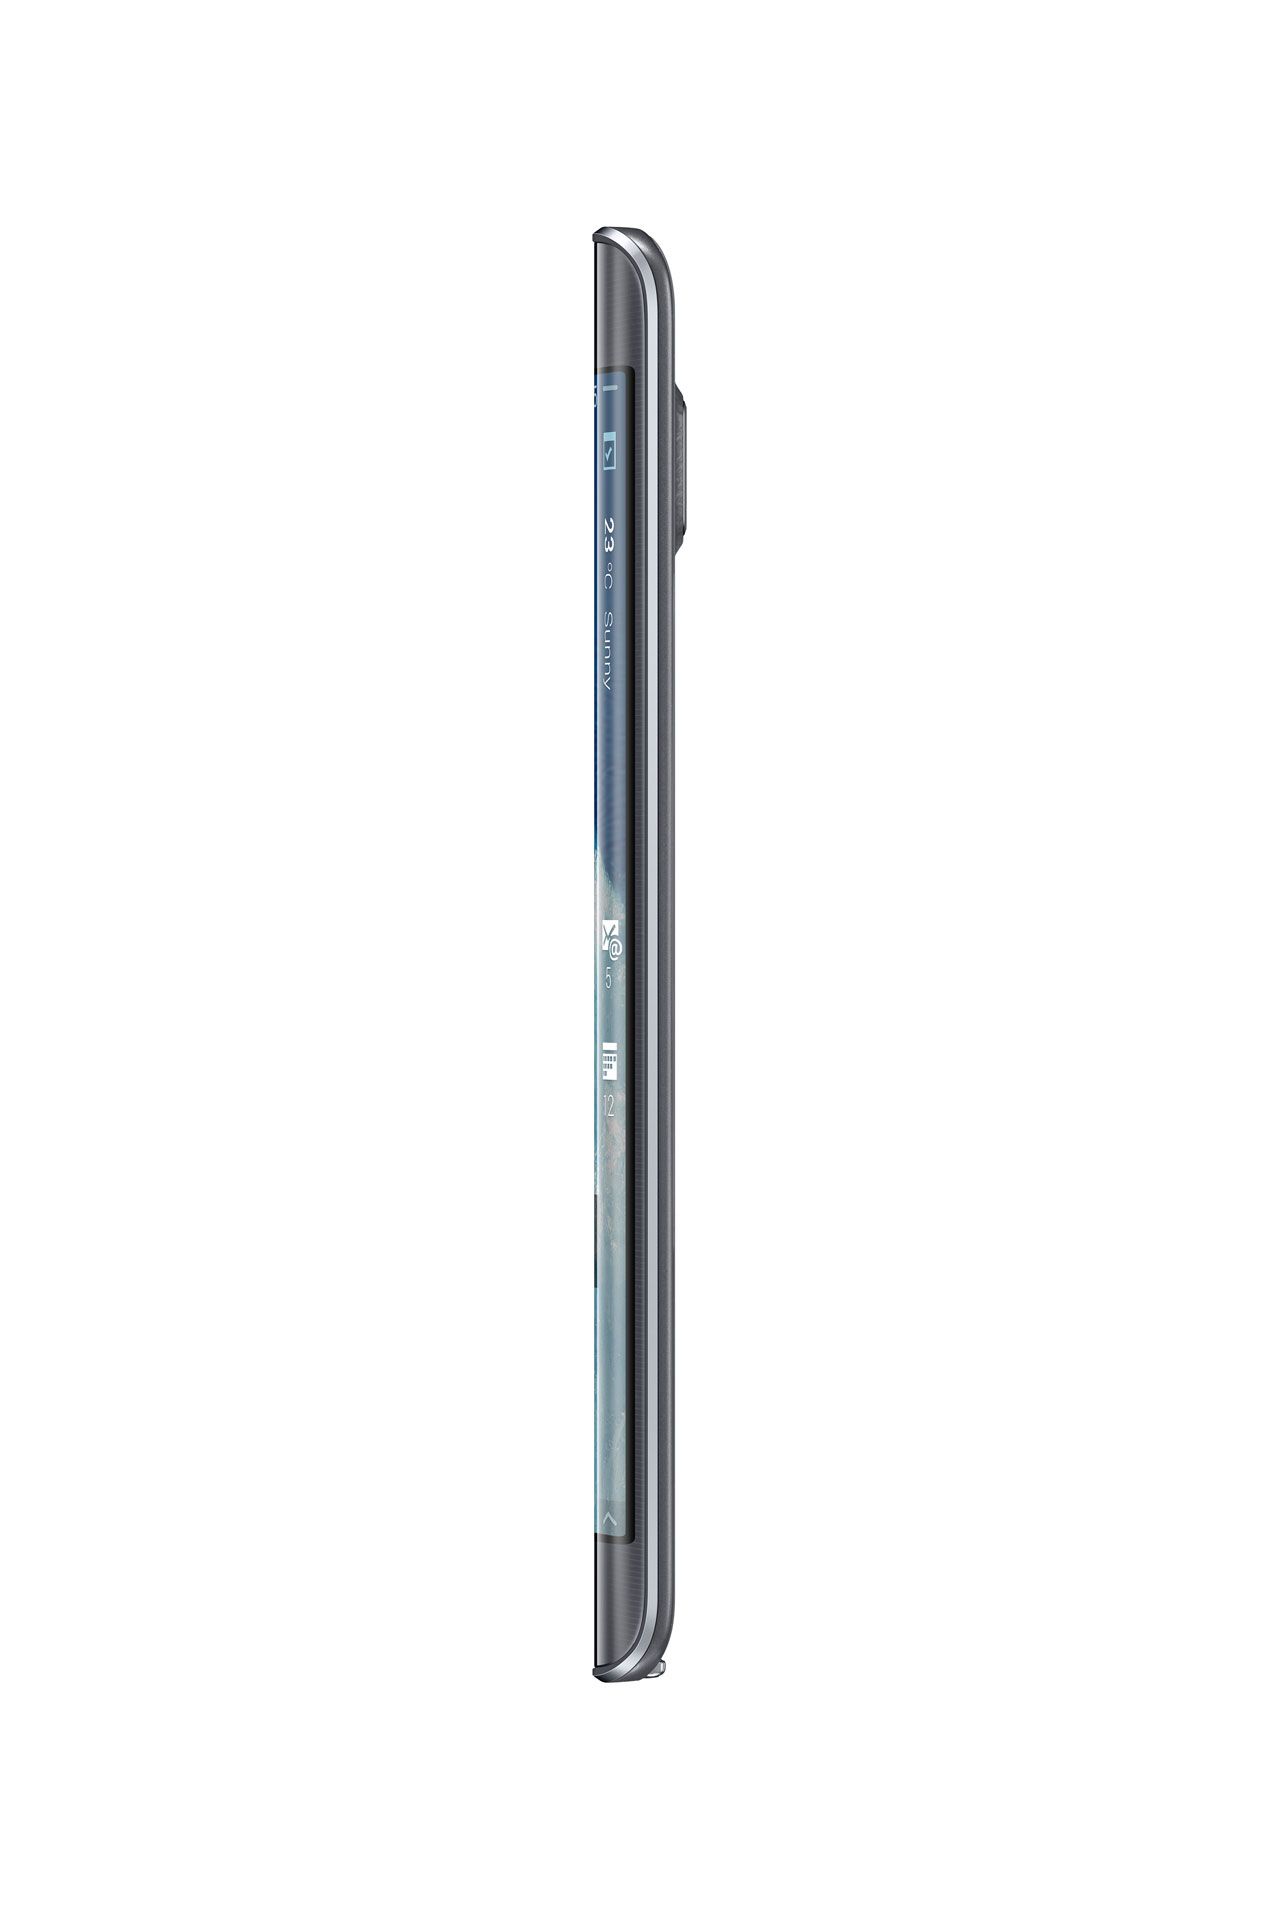 Samsung Galaxy Note Edge - Rechte Seite